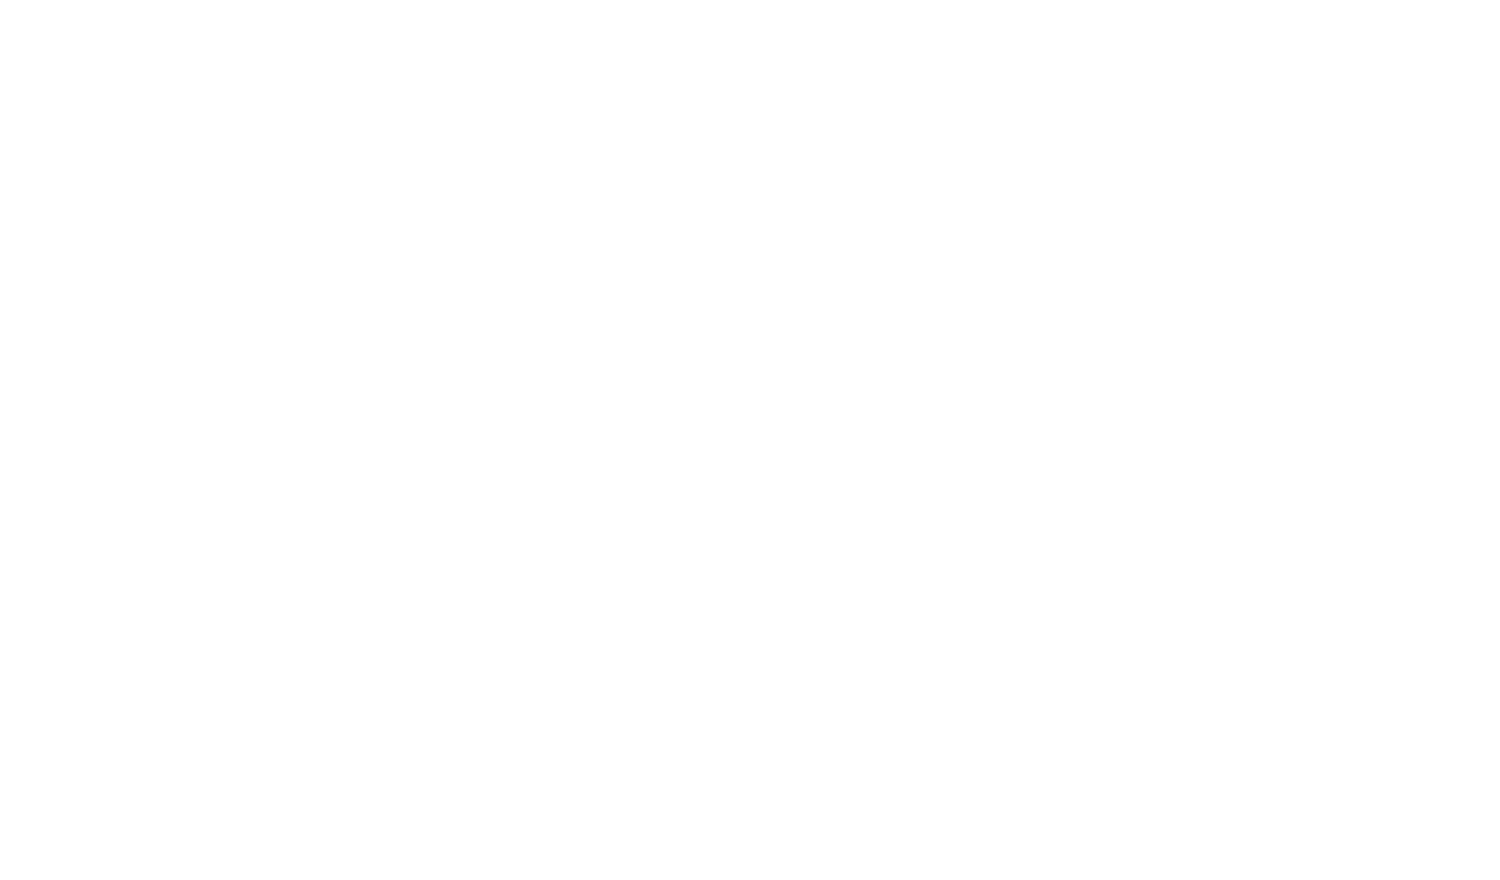 Aly Romero